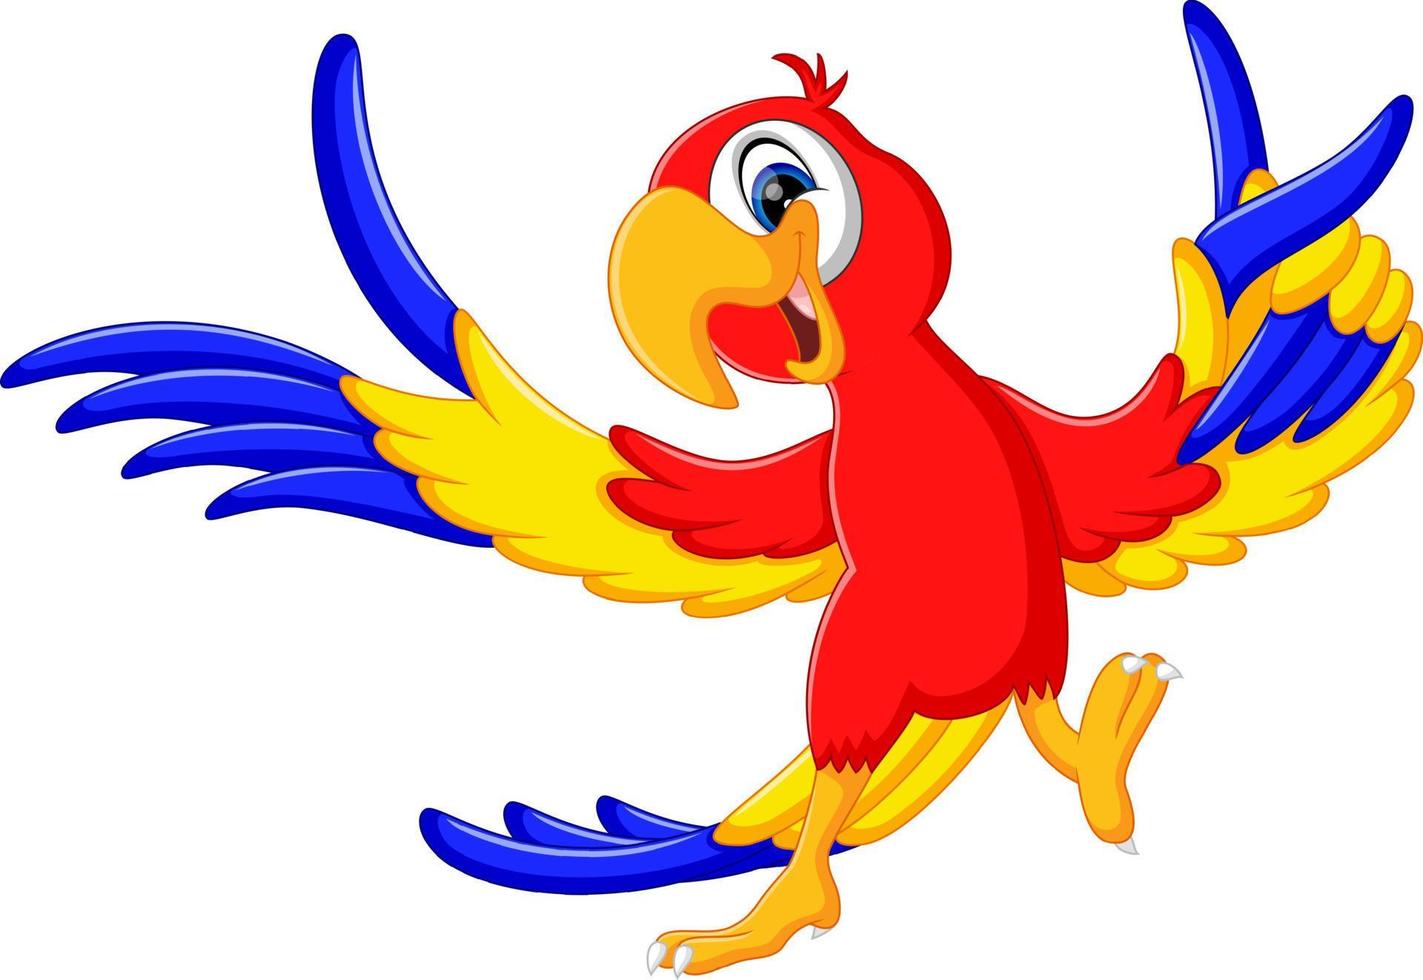 illustration of cute parrot cartoon vector